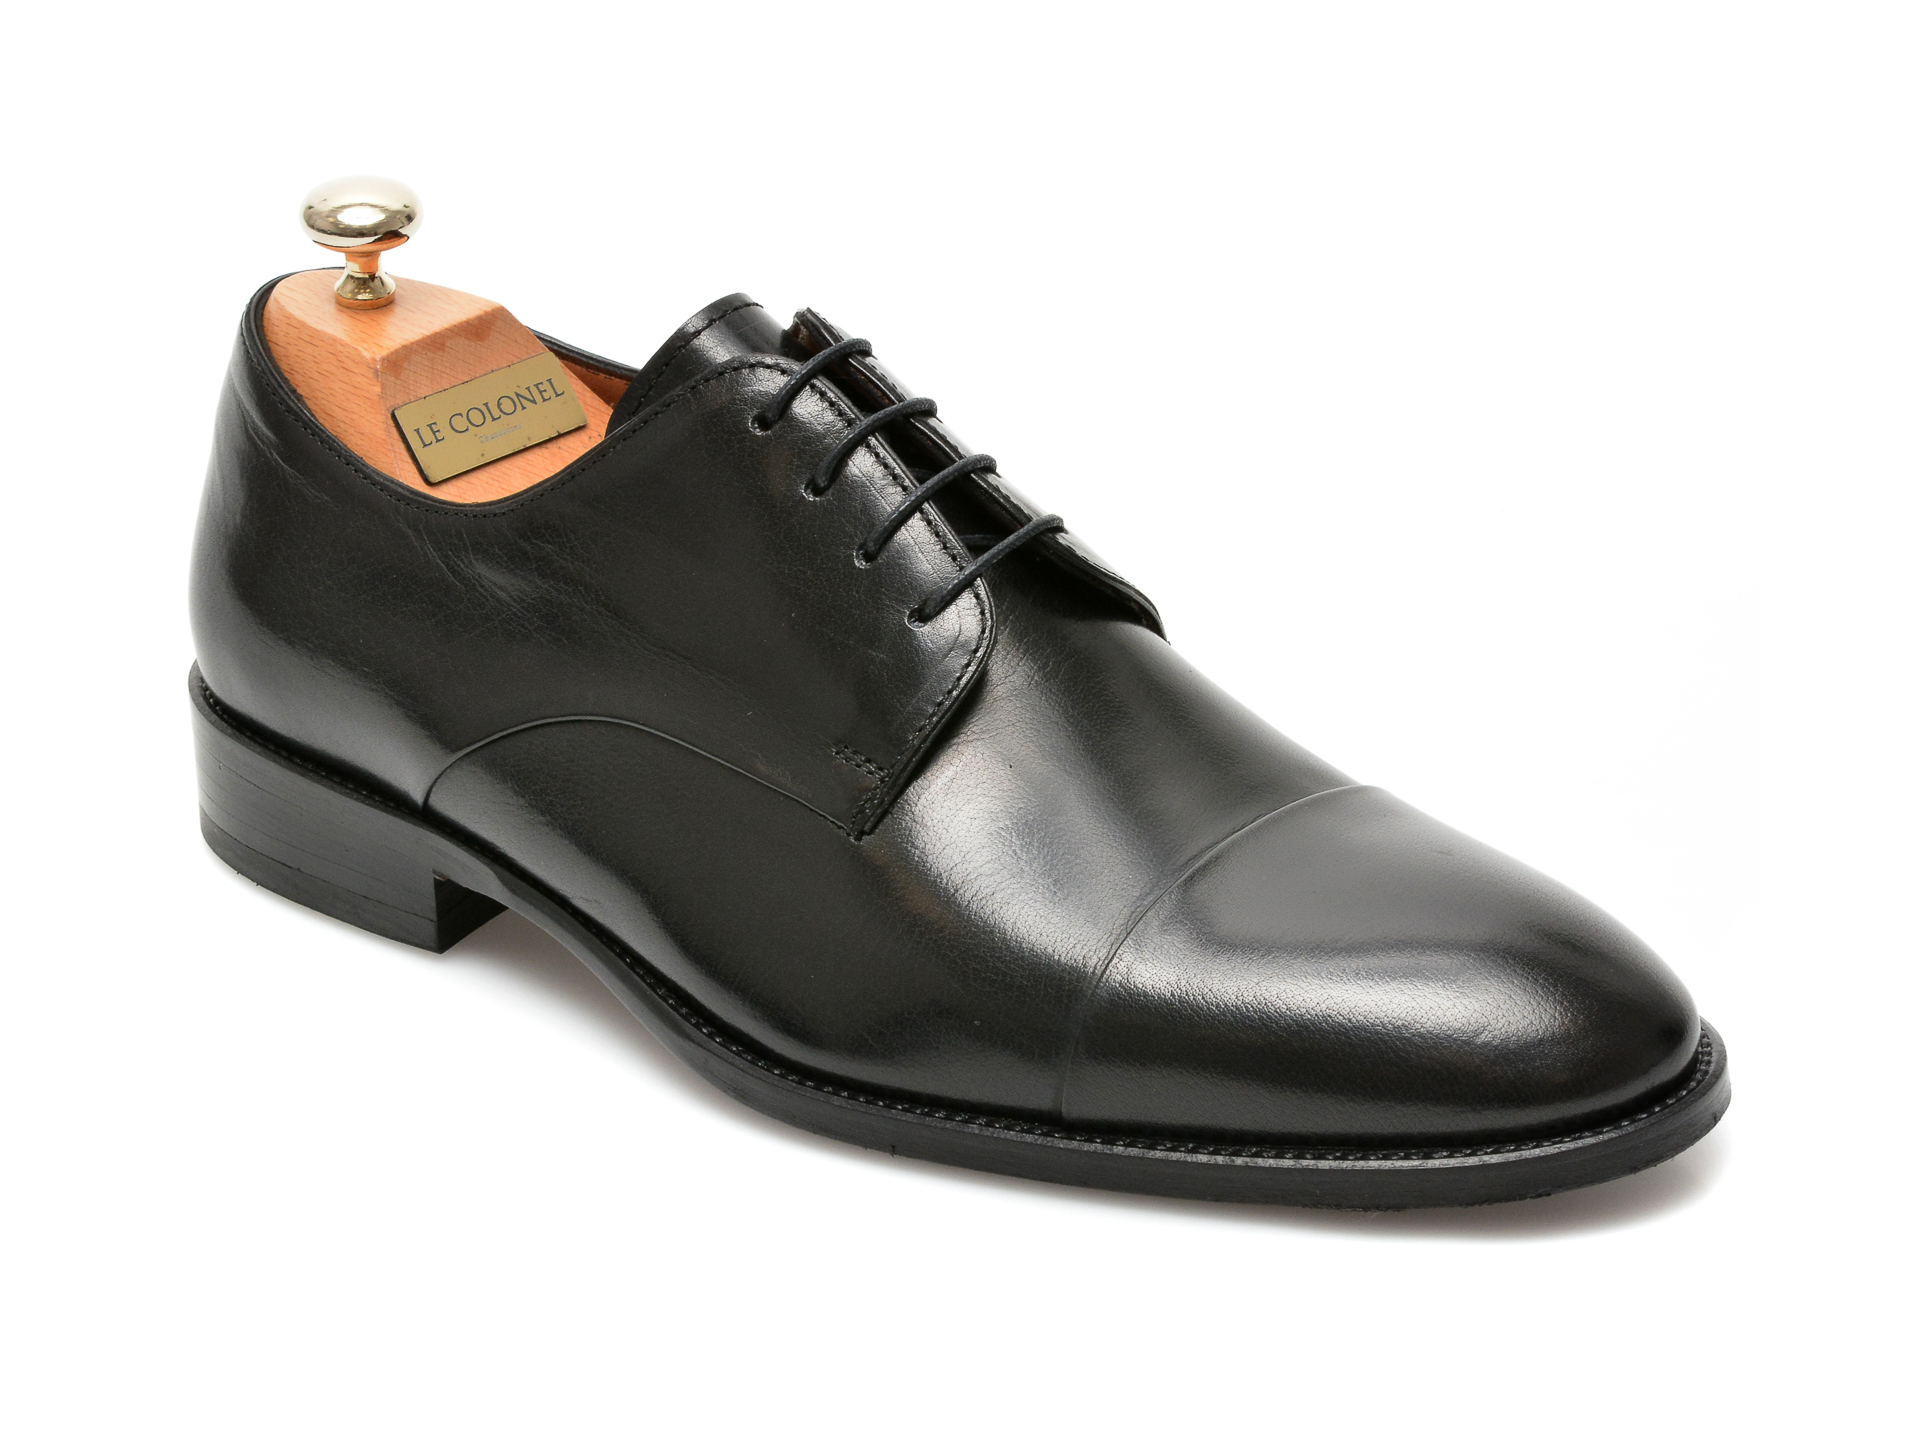 Pantofi LE COLONEL negri, 49809, din piele naturala Le Colonel Le Colonel